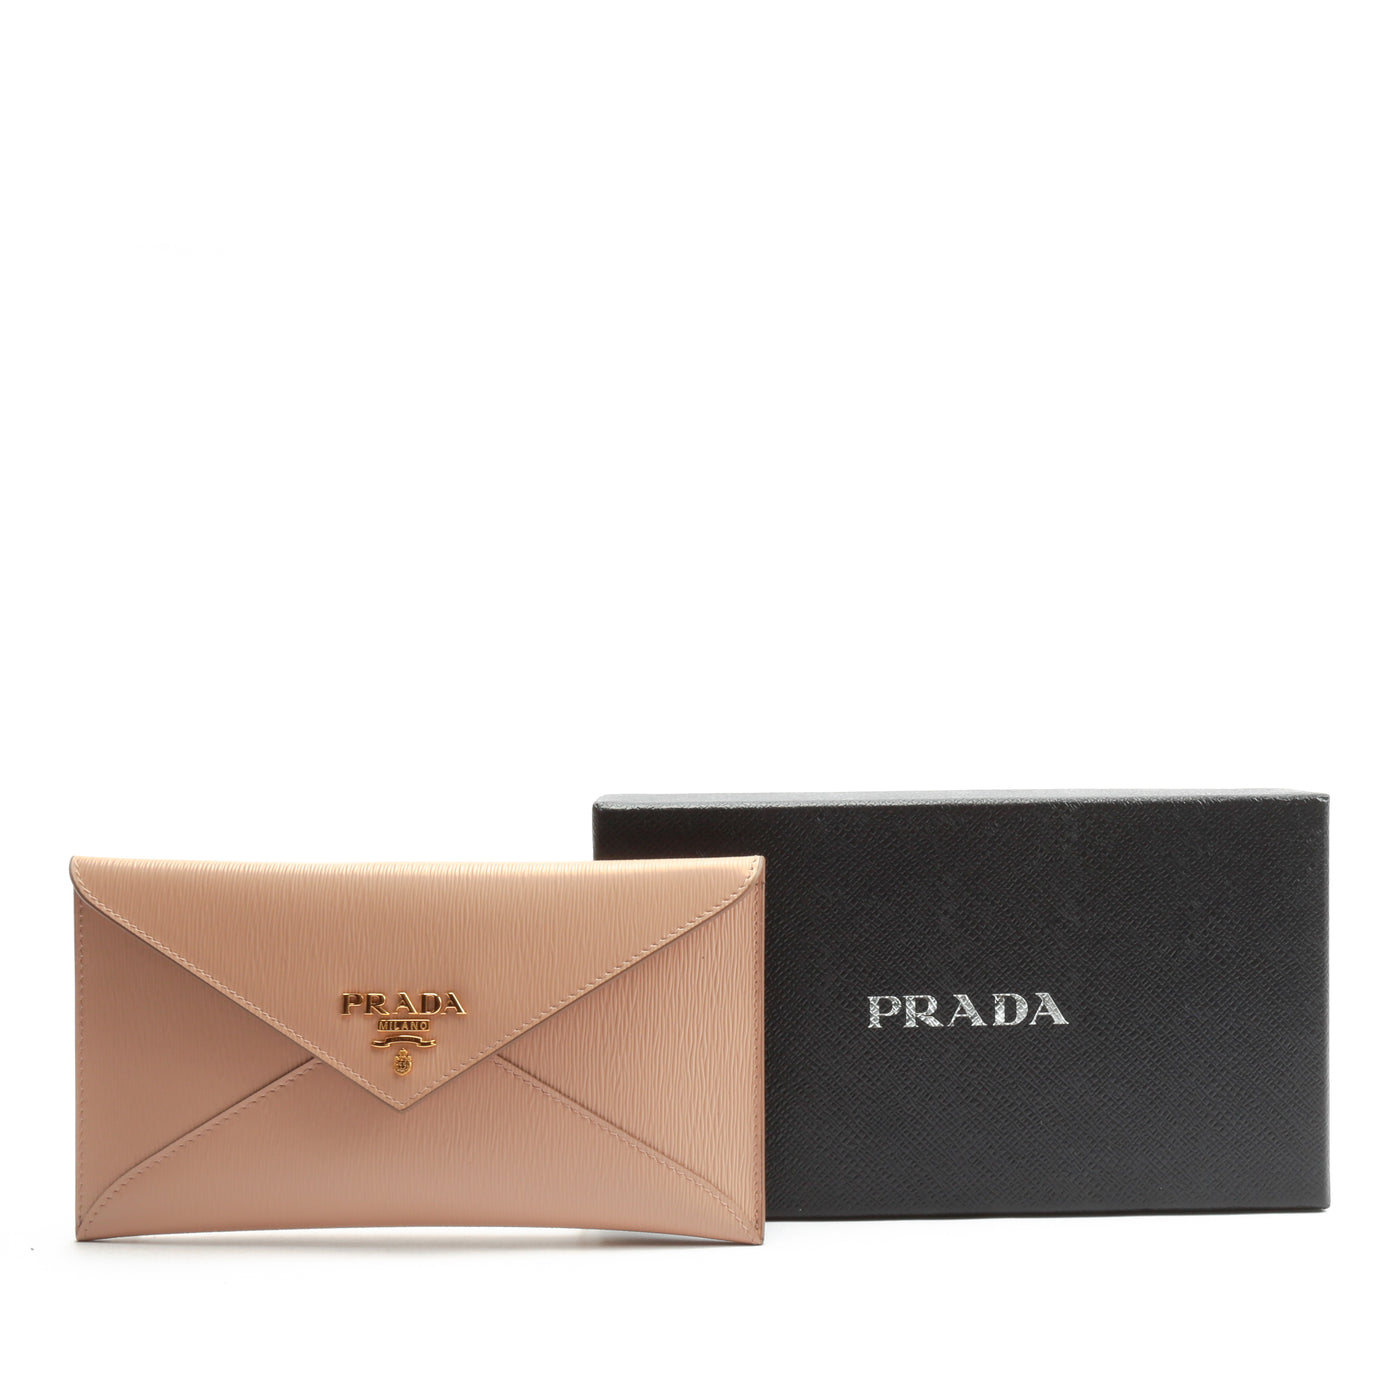 PRADA Move Envelope Wallet - Nude